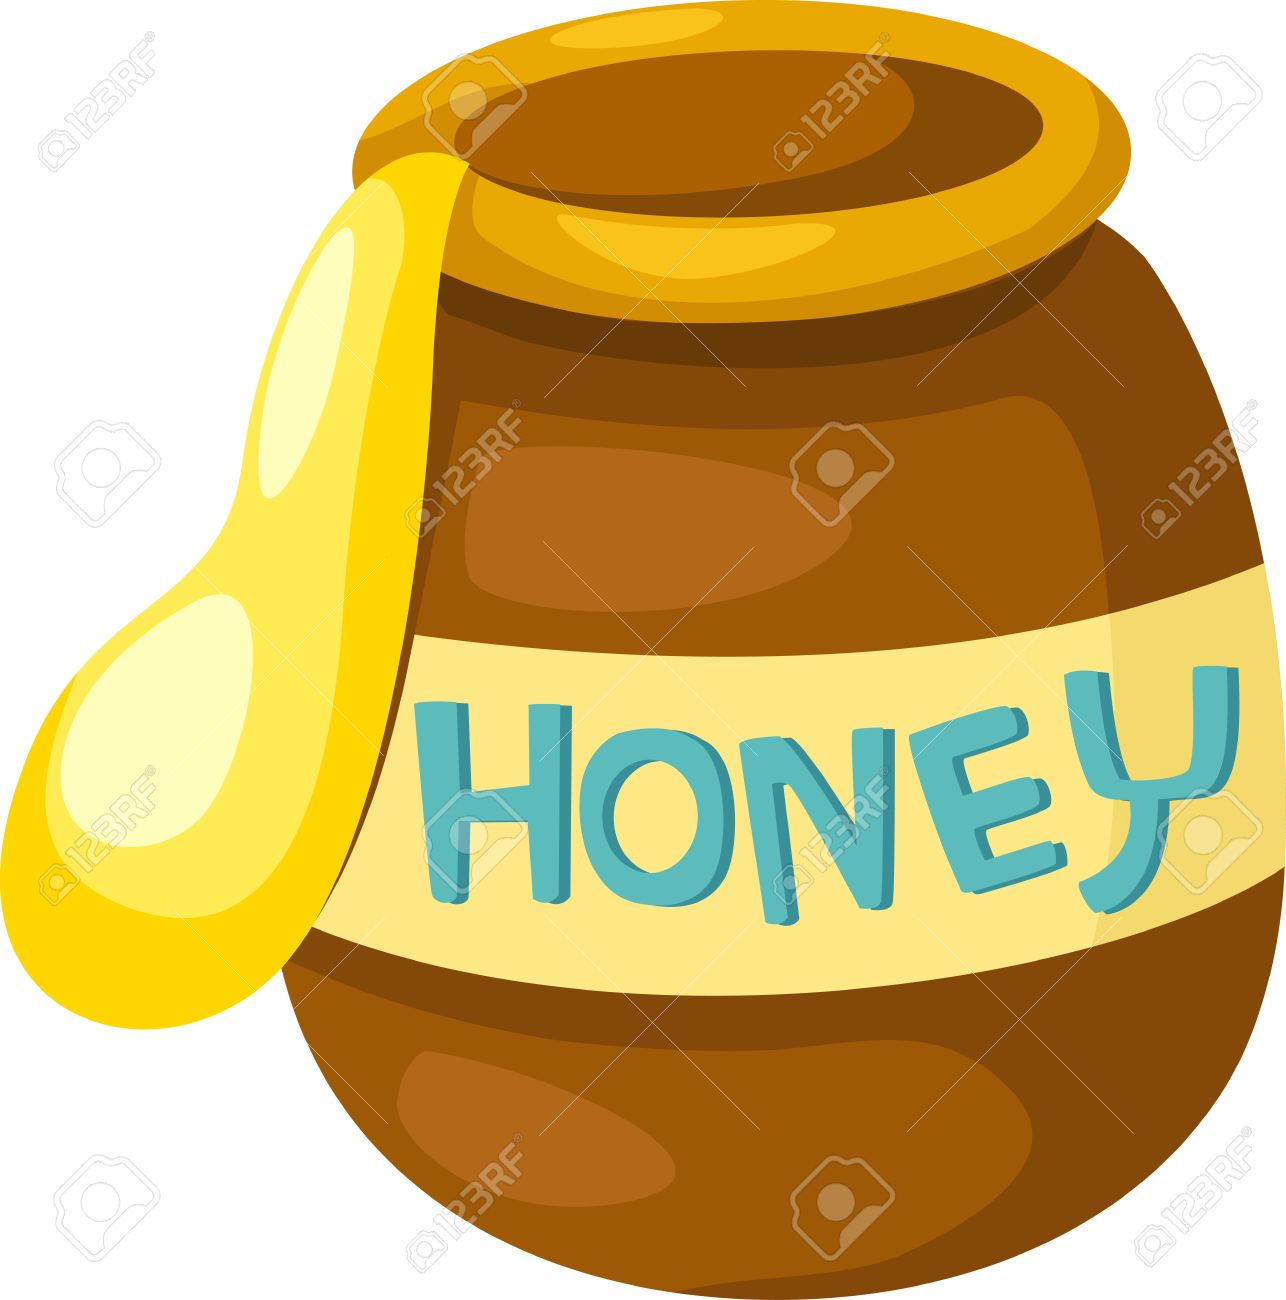 ... Fresh Honey - illustratio